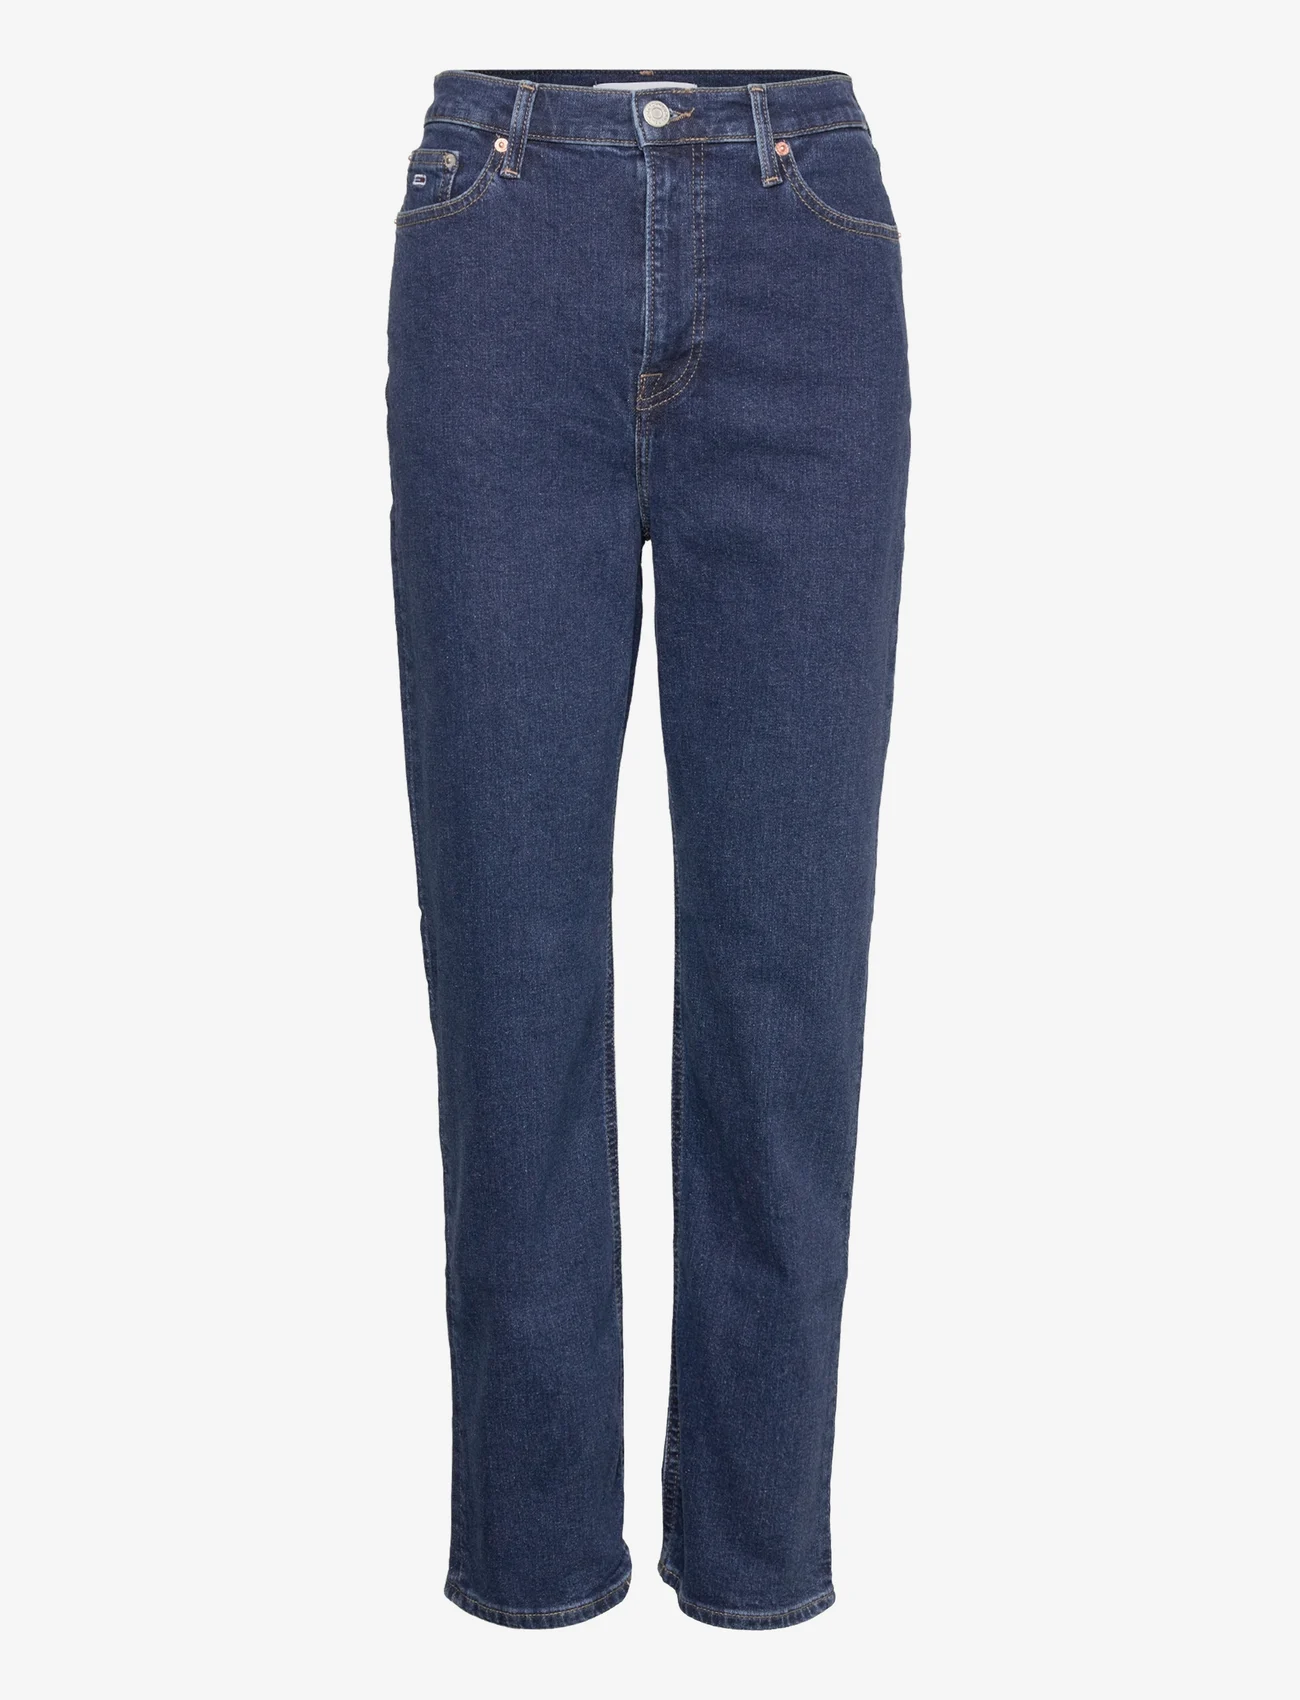 Tommy Jeans - JULIE UHR STRGT CF6151 - straight jeans - denim dark - 0